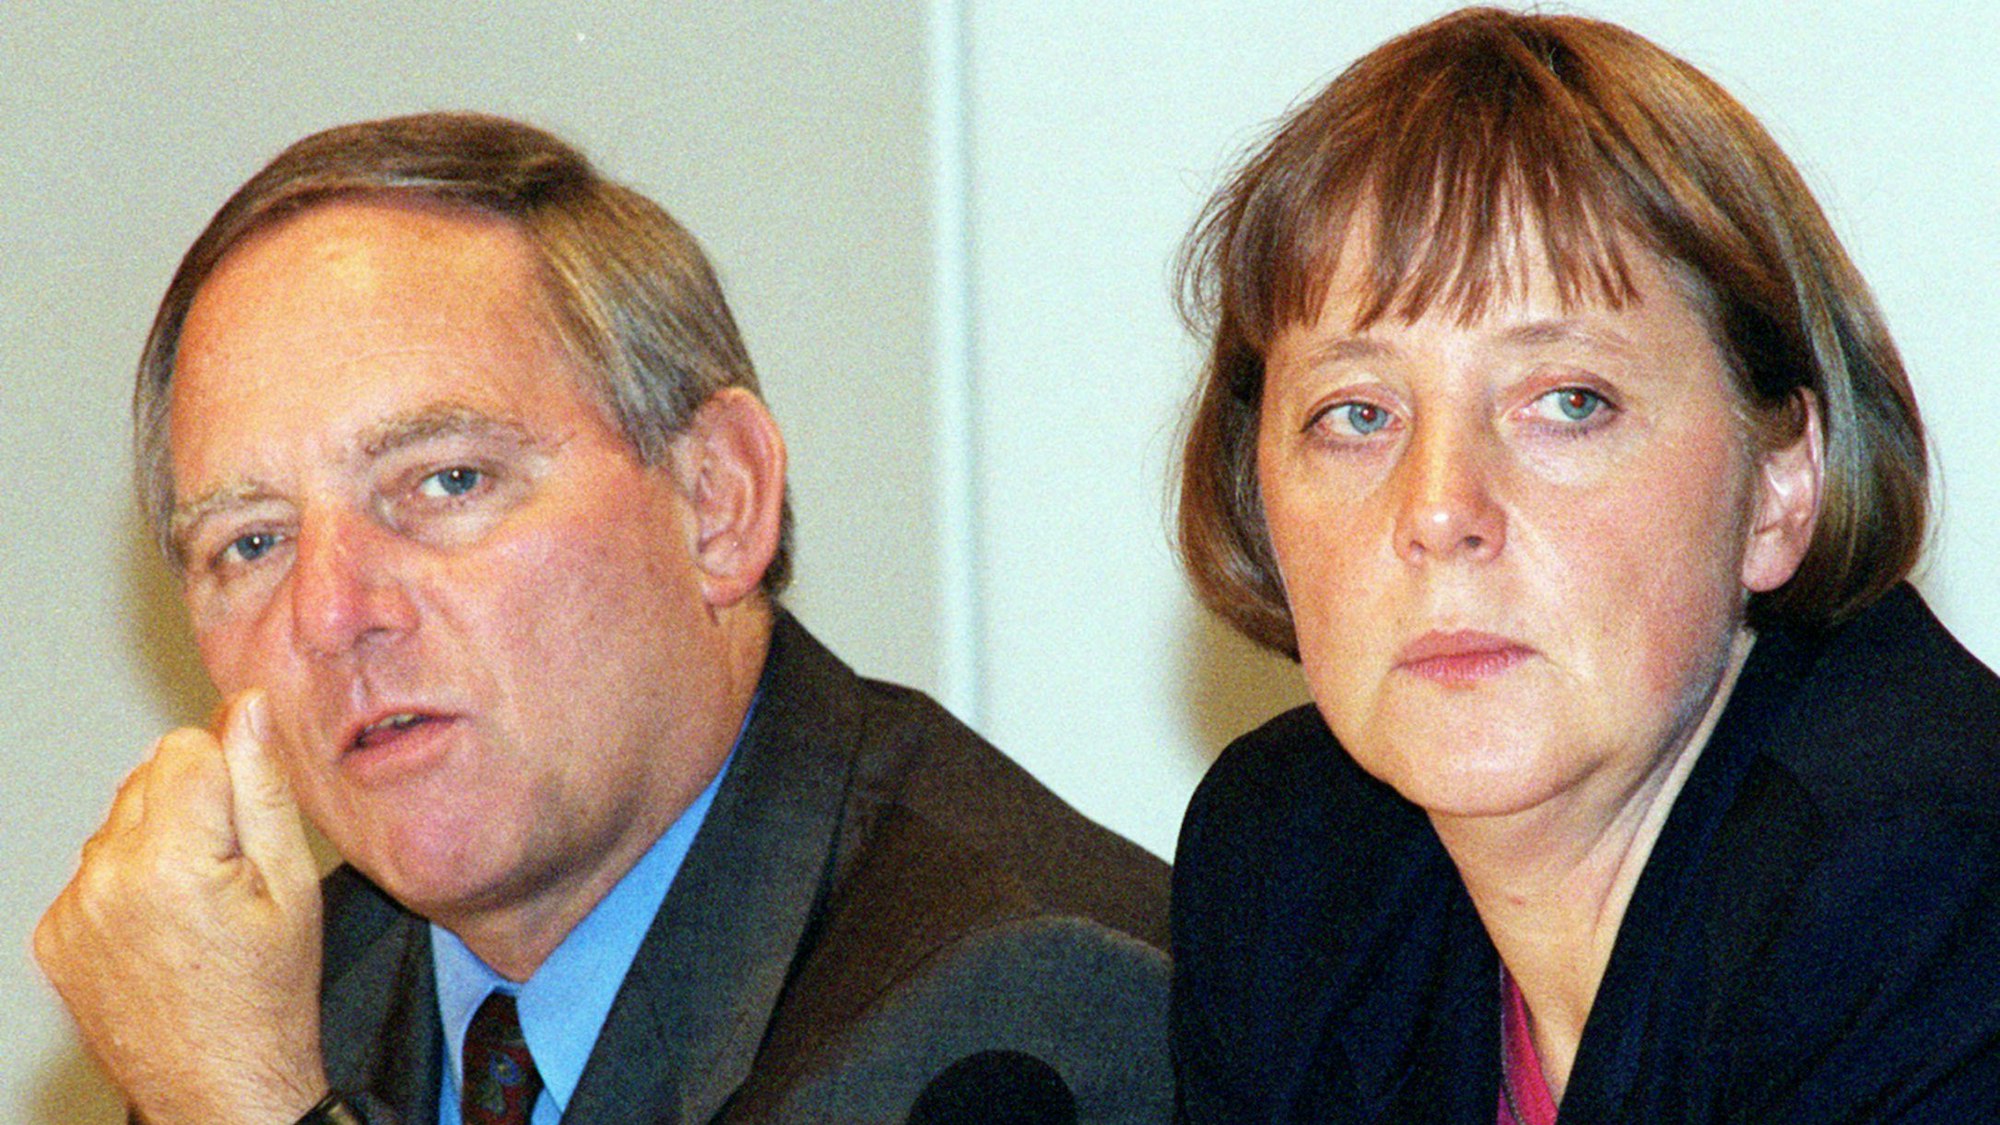 Bonn 1998: Der CDU/CSU-Fraktionsvorsitzende und künftige CDU-Chef Wolfgang Schäuble spricht auf einer Pressekonferenz in der Parteizentrale der CDU in Bonn. Neben ihm sitzt Angela Merkel, die damals vom CDU-Vorstand für das Amt der Generalsekretärin nominiert wurde.